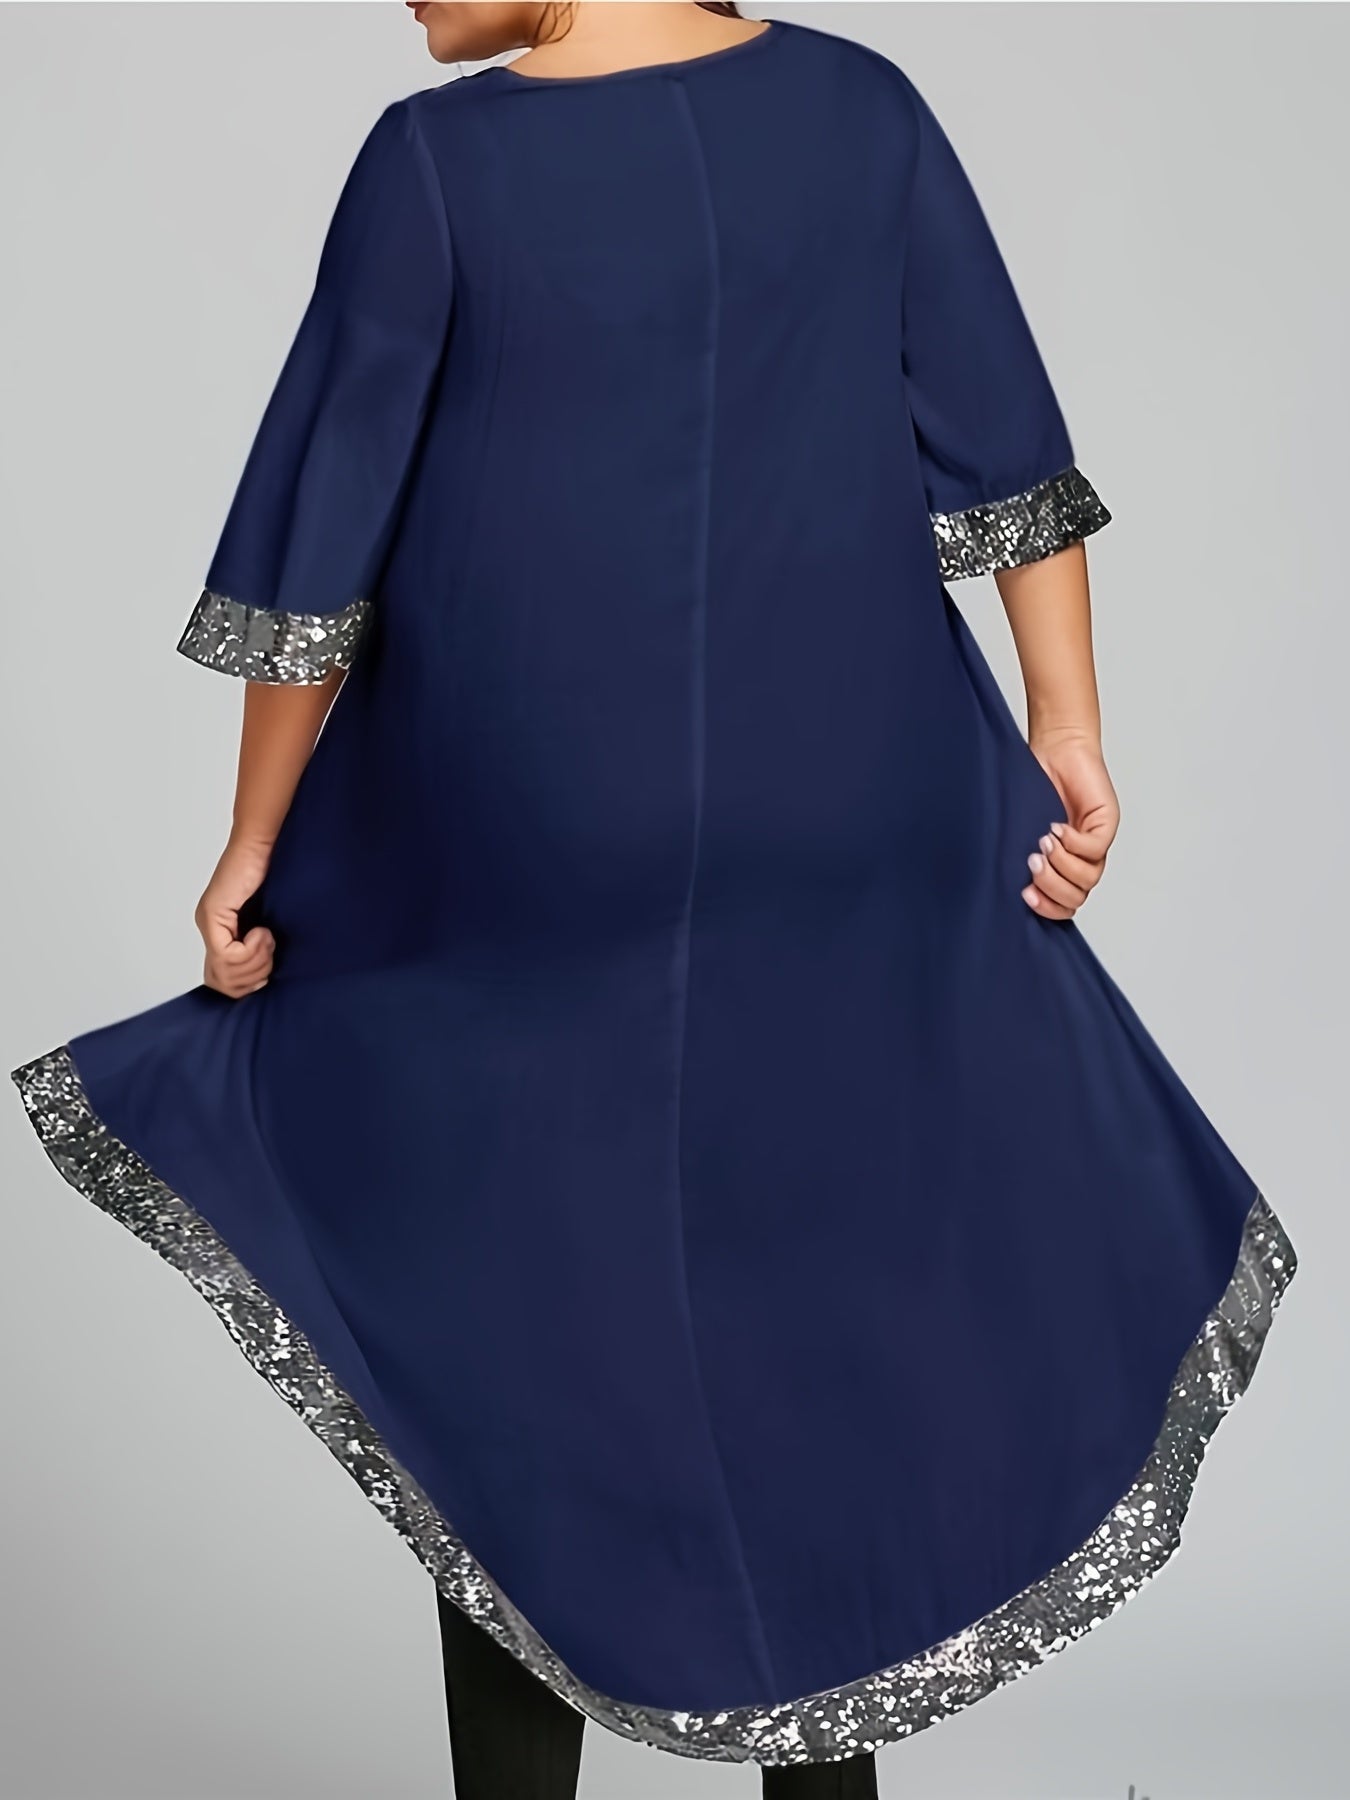 Antmvs Plus Size Elegant Dress, Women's Plus Sequined Trim Cut Out Asymmetric Neck Half Sleeve High Low Dress